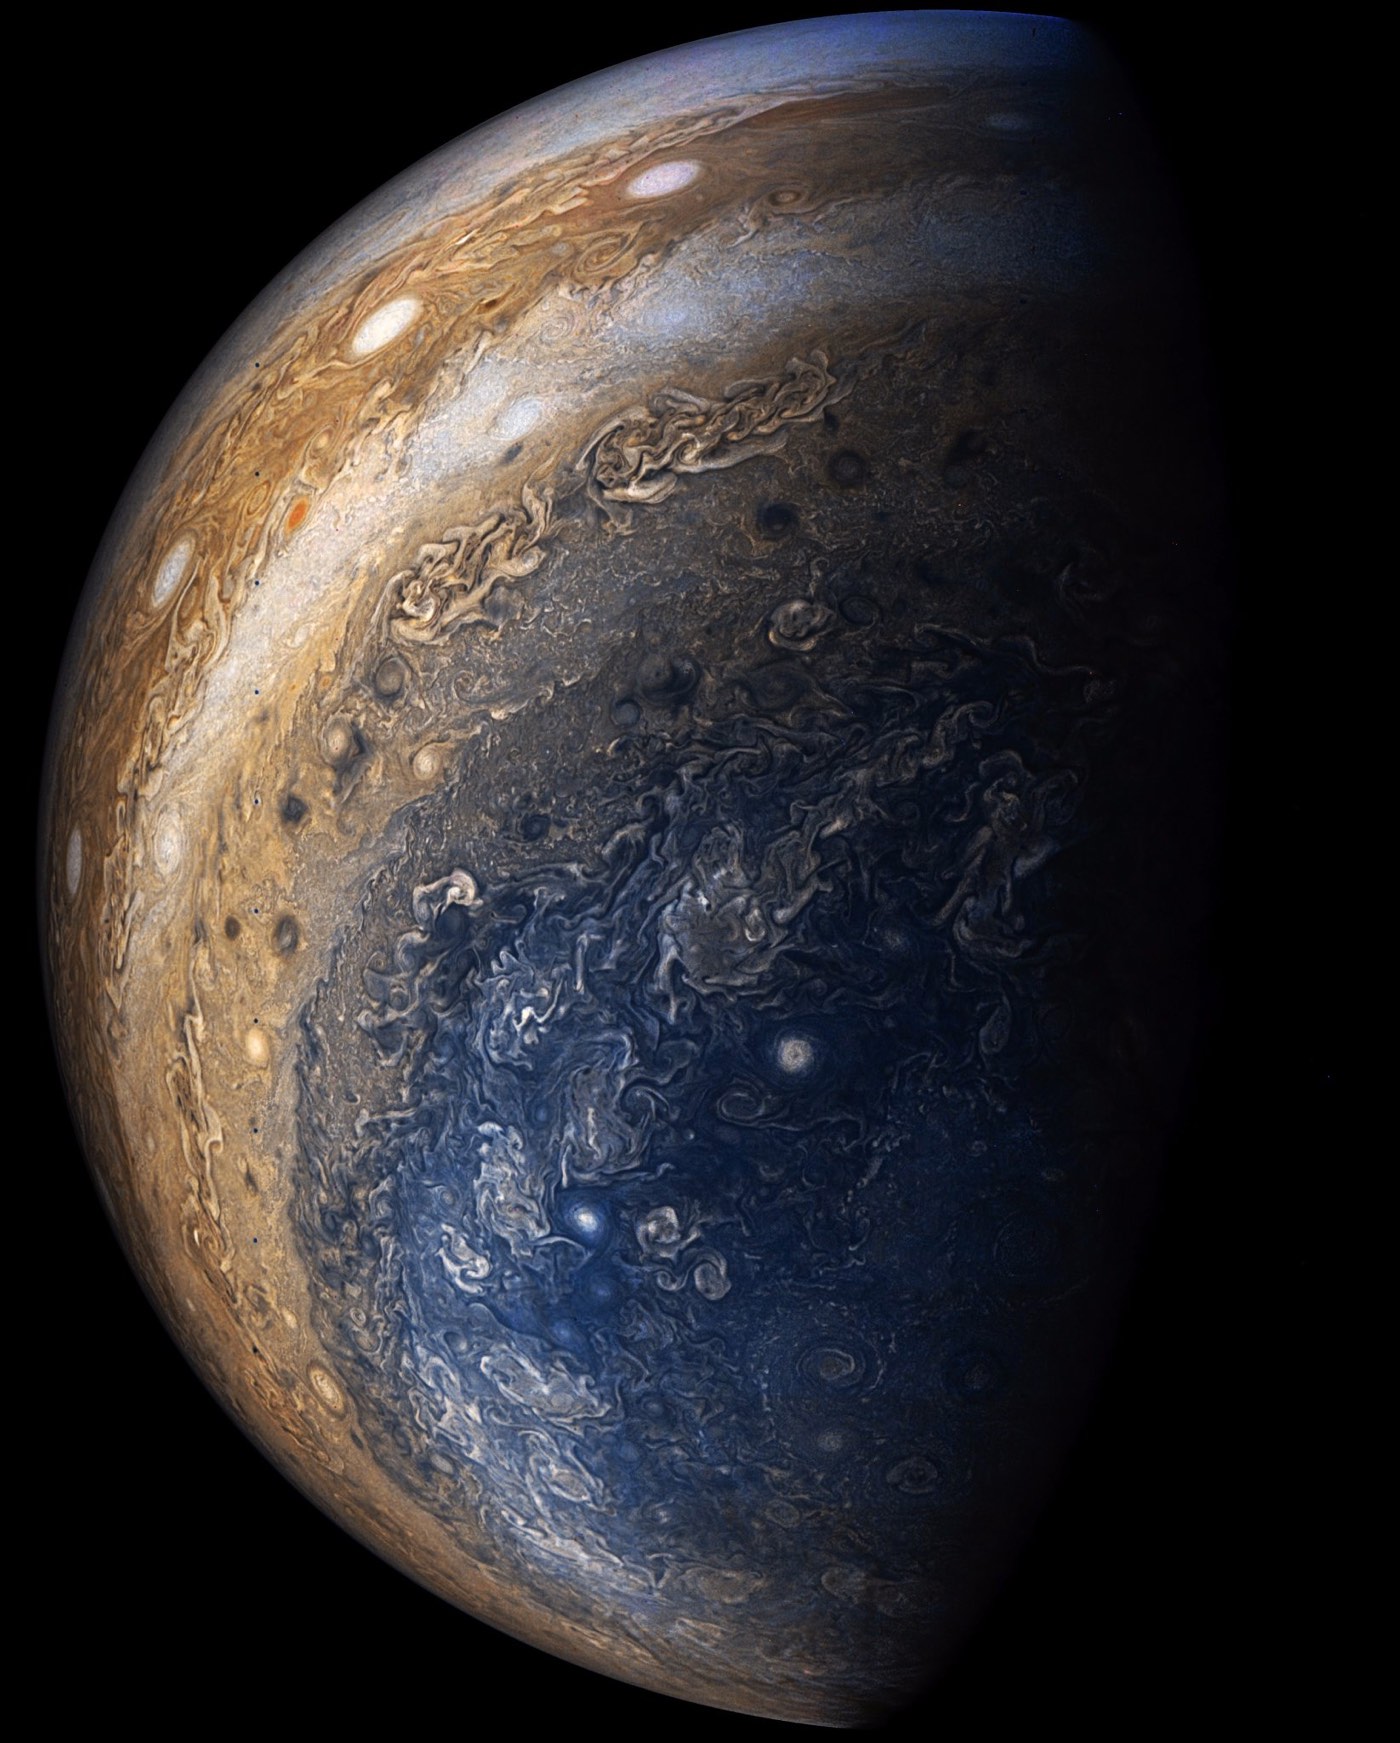 Jupiter (kottke.org)